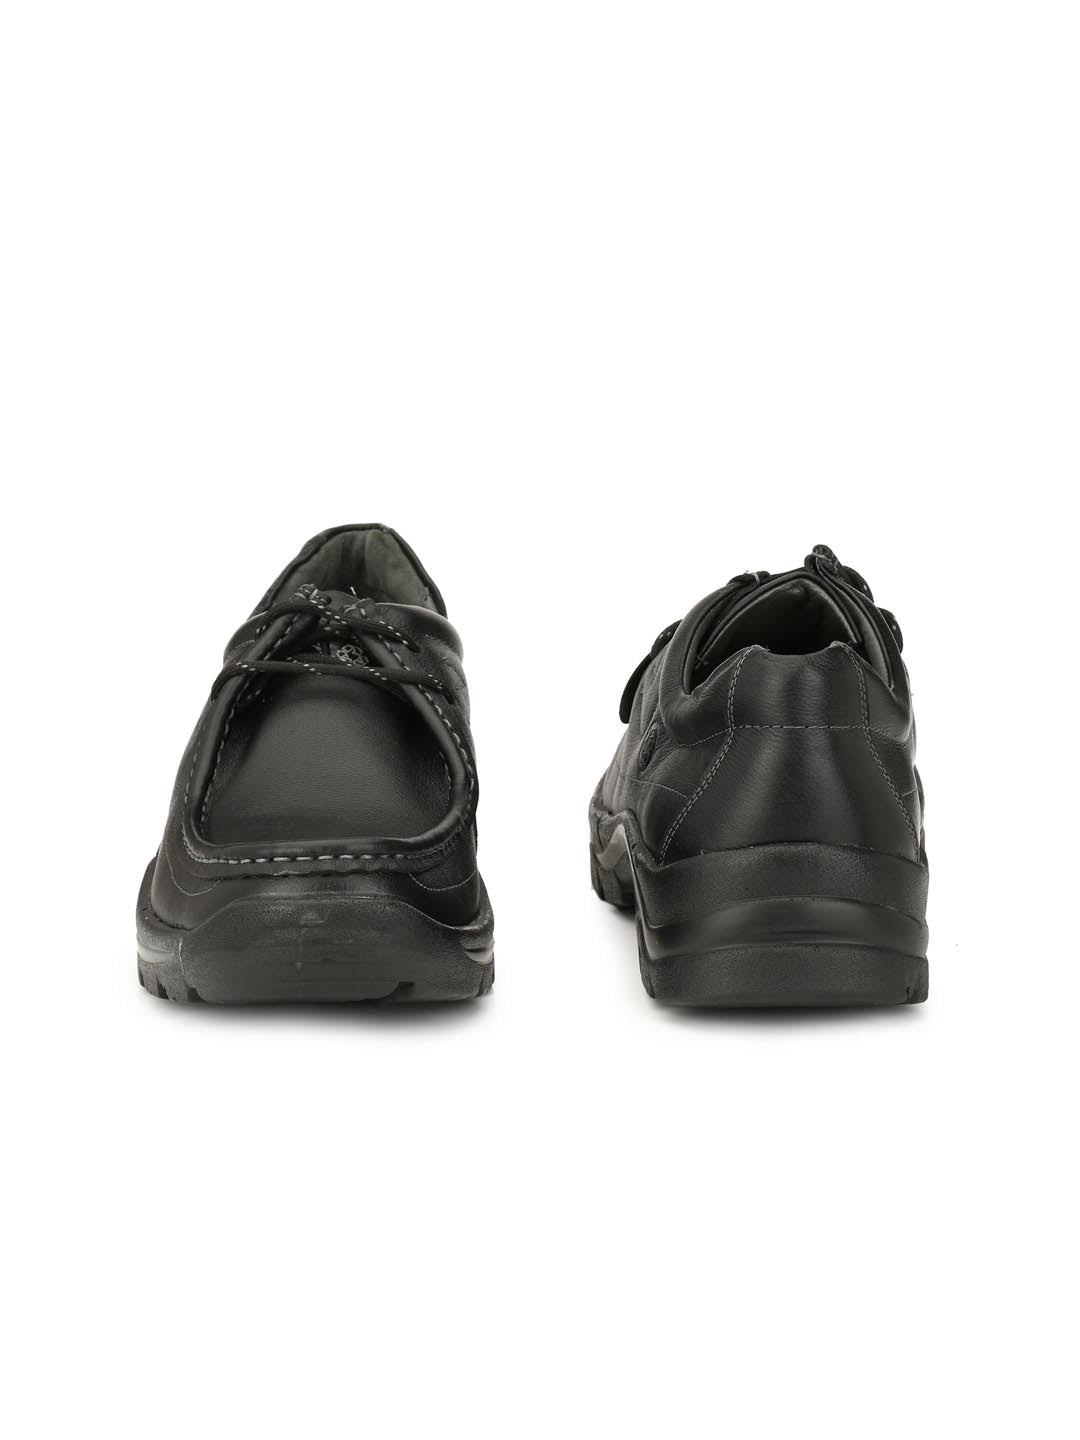 Woodland shoe 7-8 size( Green/Black colour). - Men - 1739037393